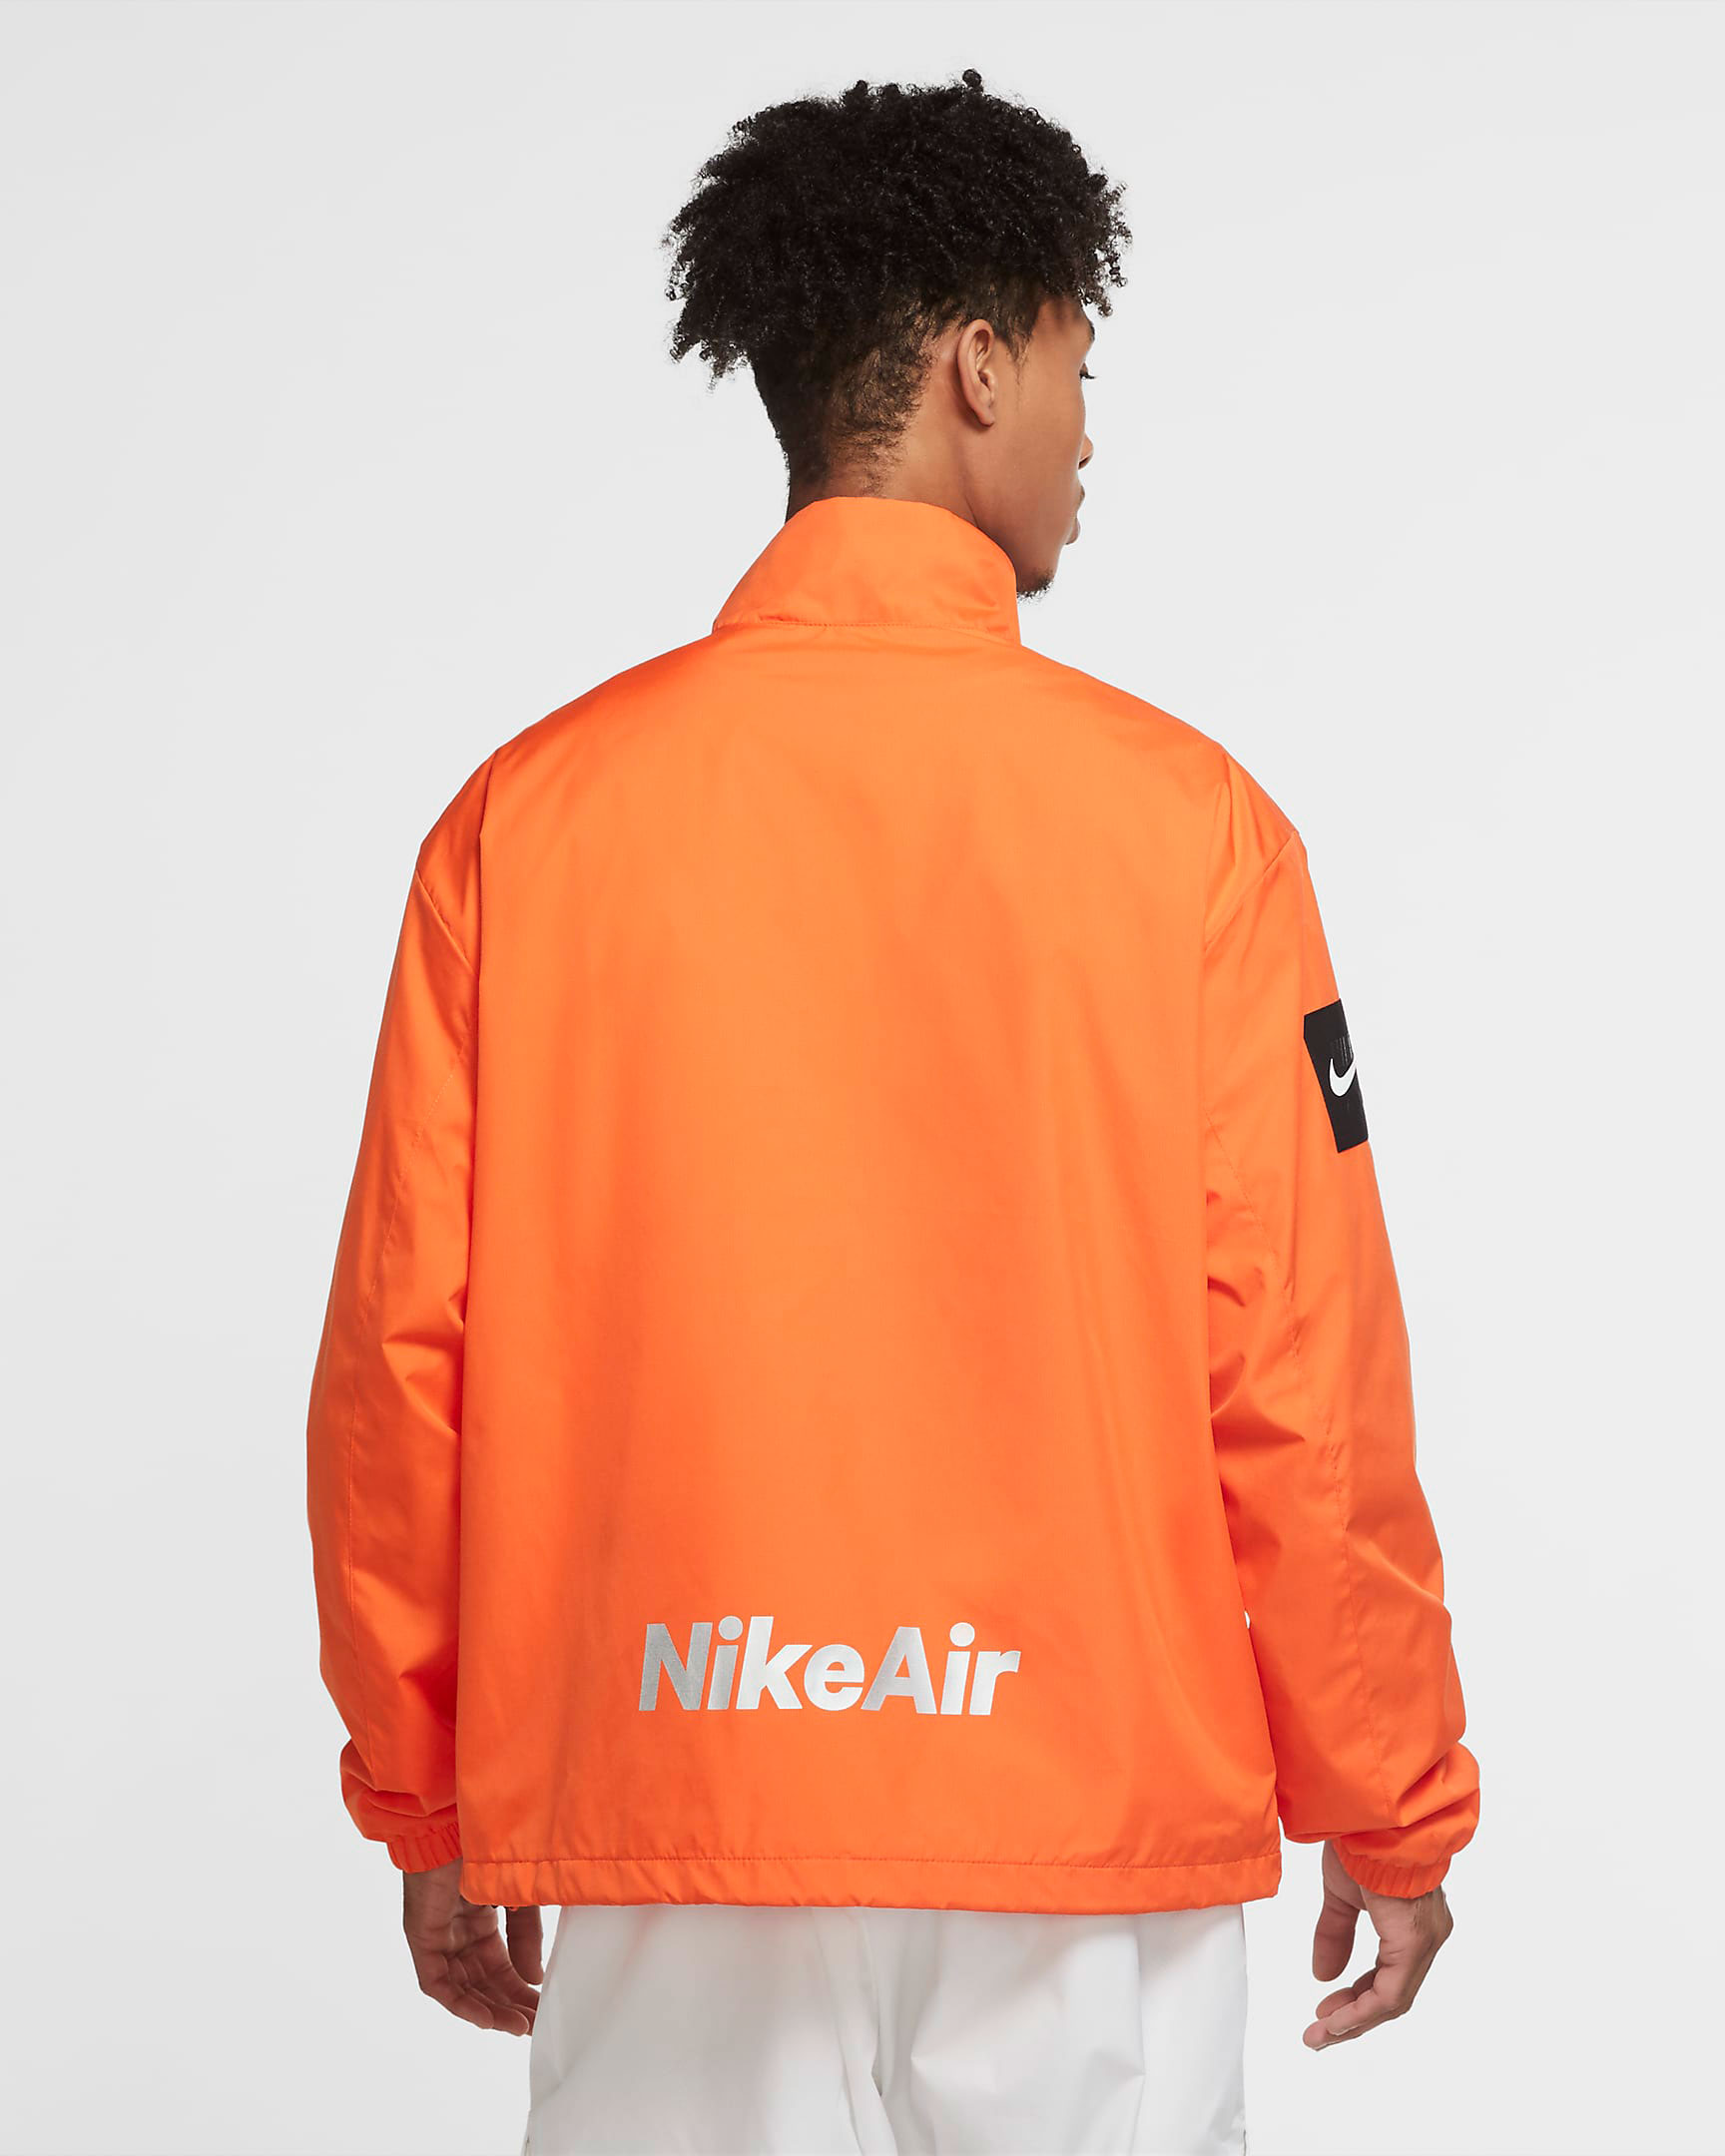 nike-air-orange-jacket-2